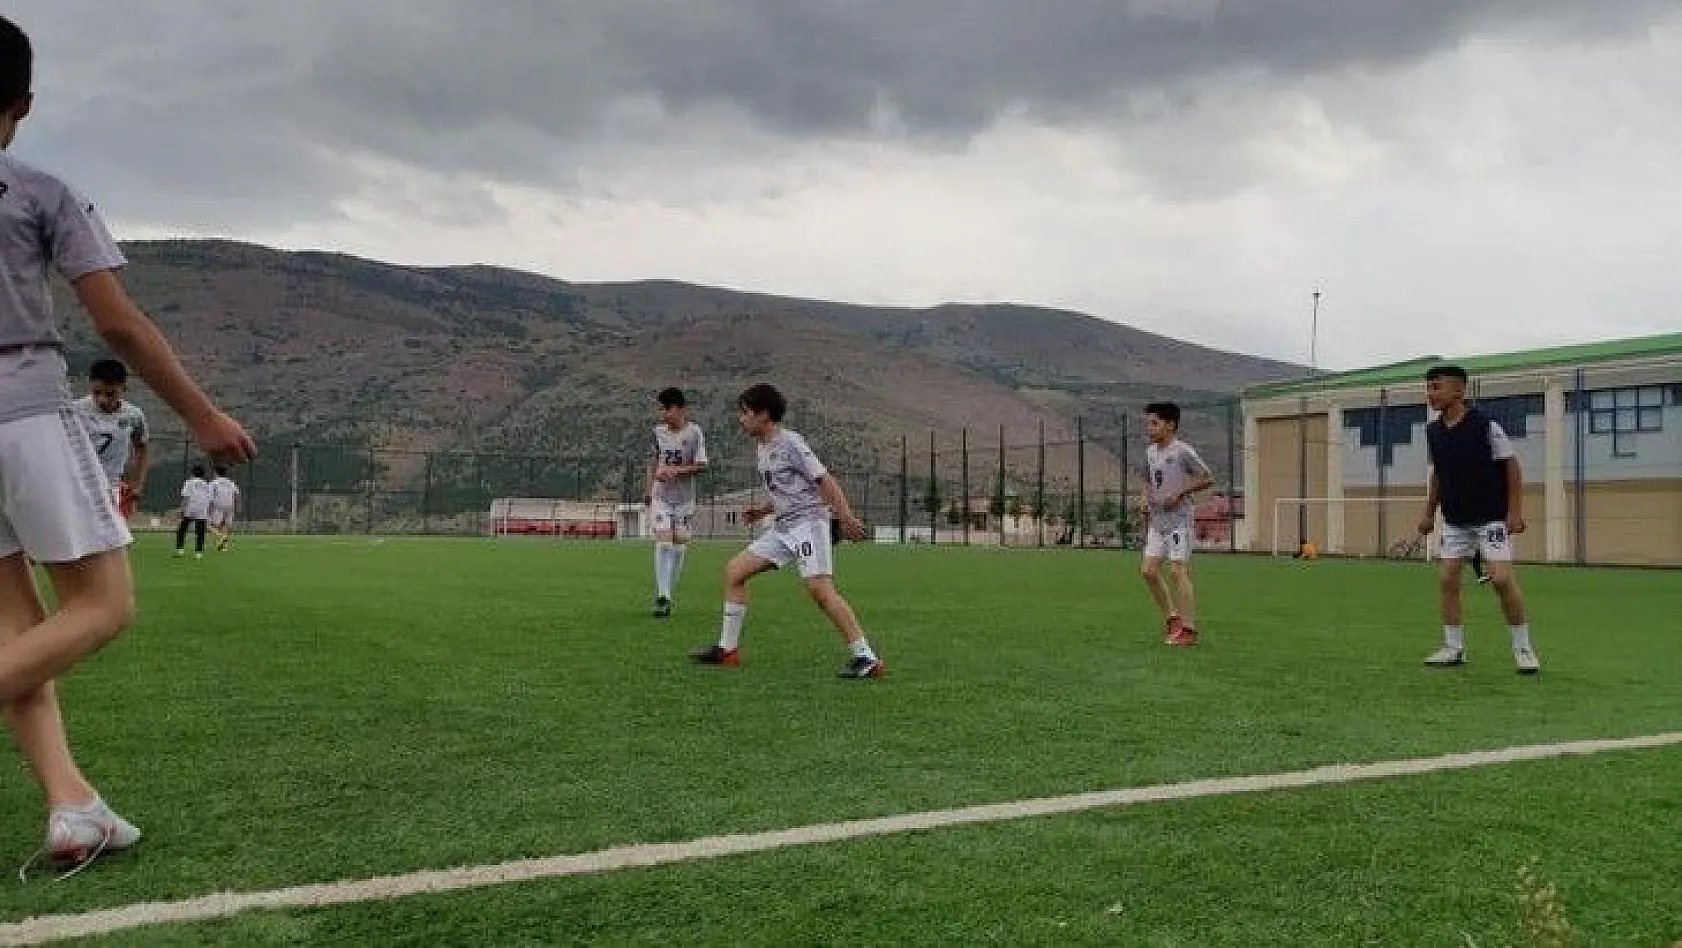 Yerköyspor Futbol Akademi yeniden kapılarını açtı